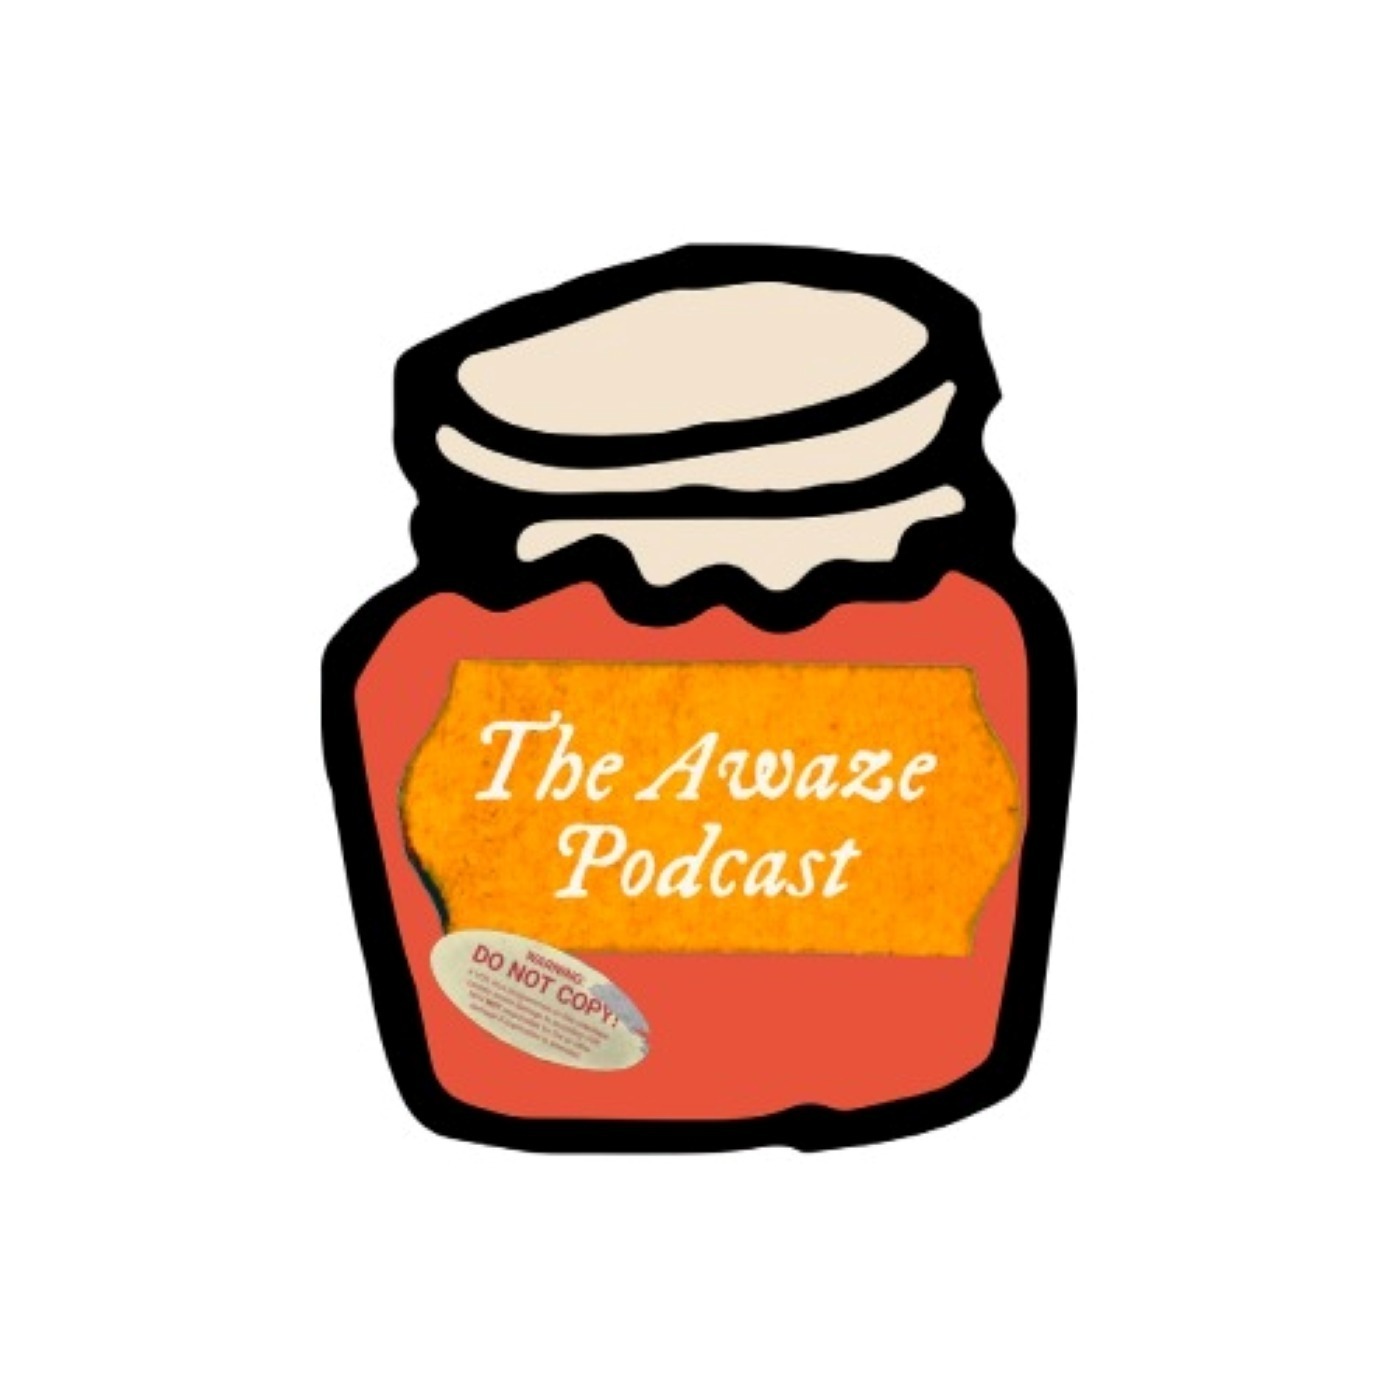 Season 2 - The Awaze Podcast is back!